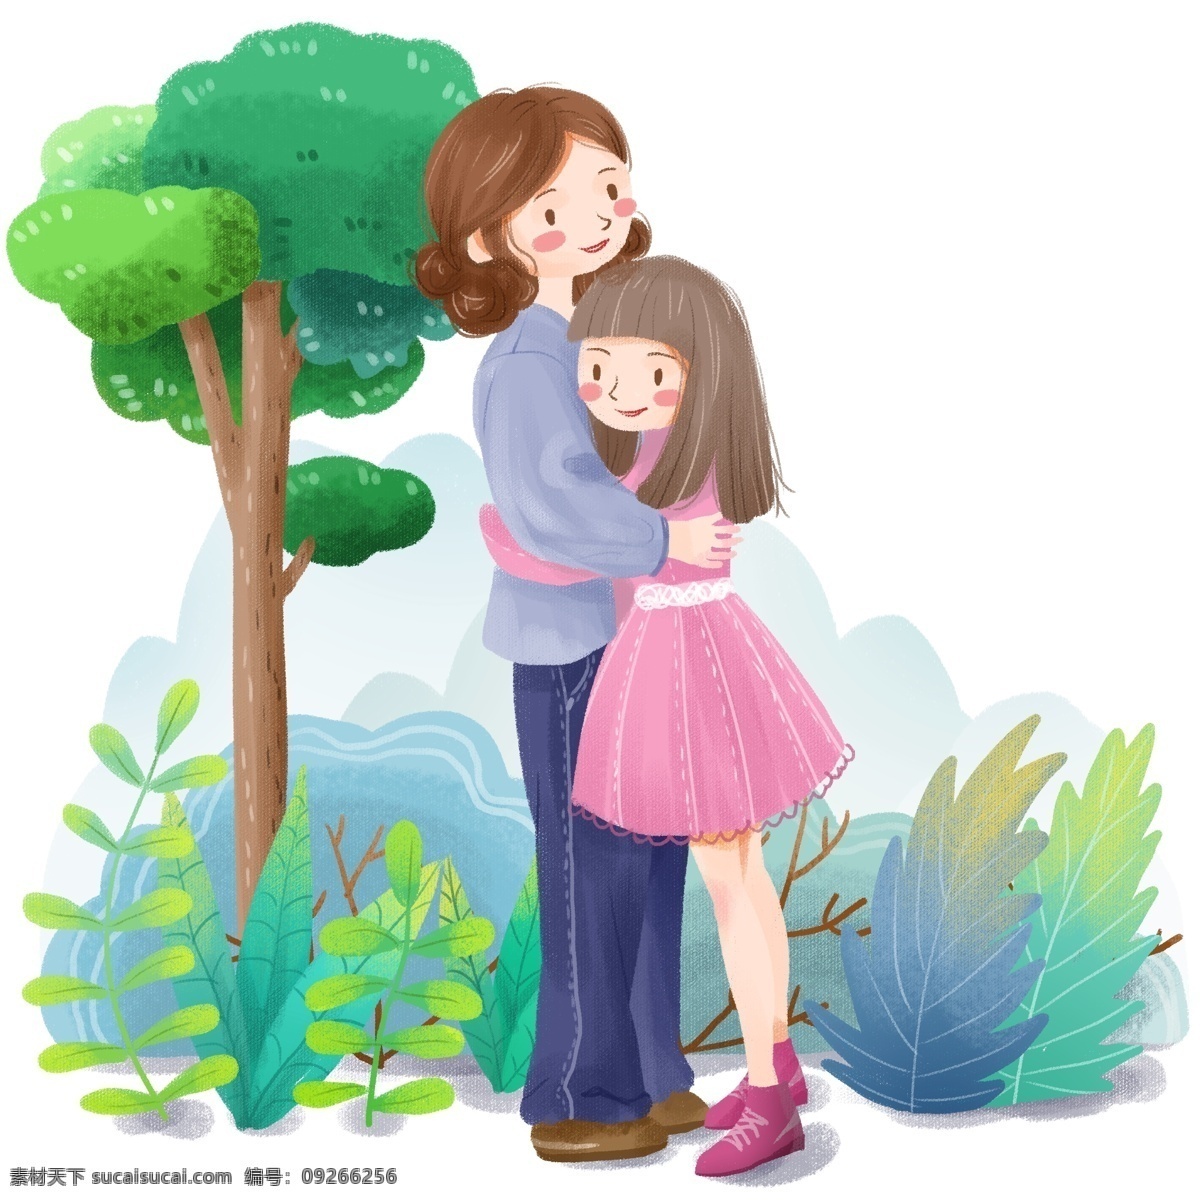 手绘 卡通 可爱 母女 亲情 拥抱 女孩 森林 绿植 植物 绿色 温馨 家庭